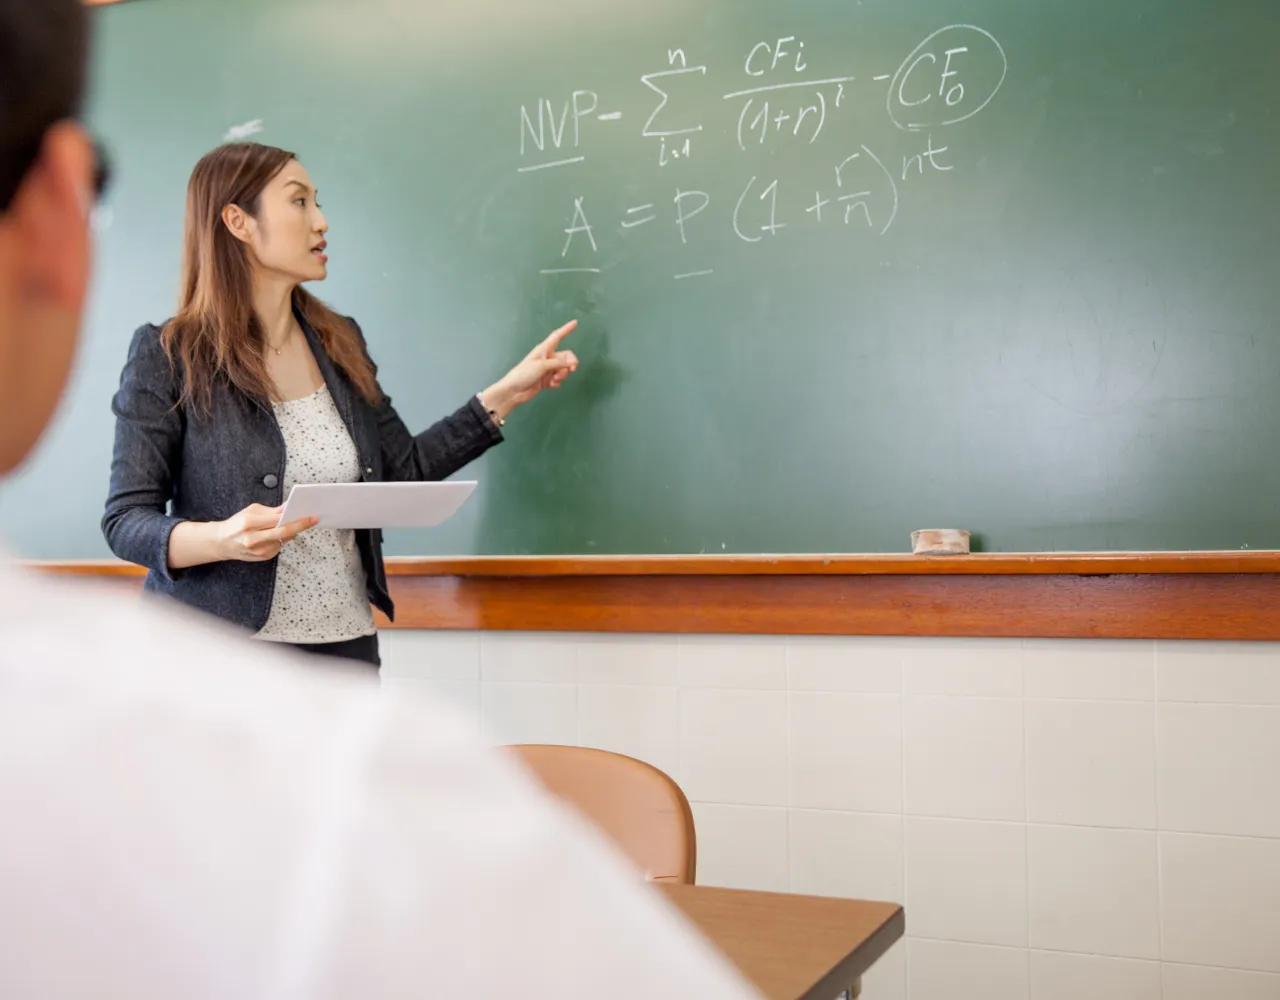 Uma mulher está dando uma aula em frente a um quadro negro.